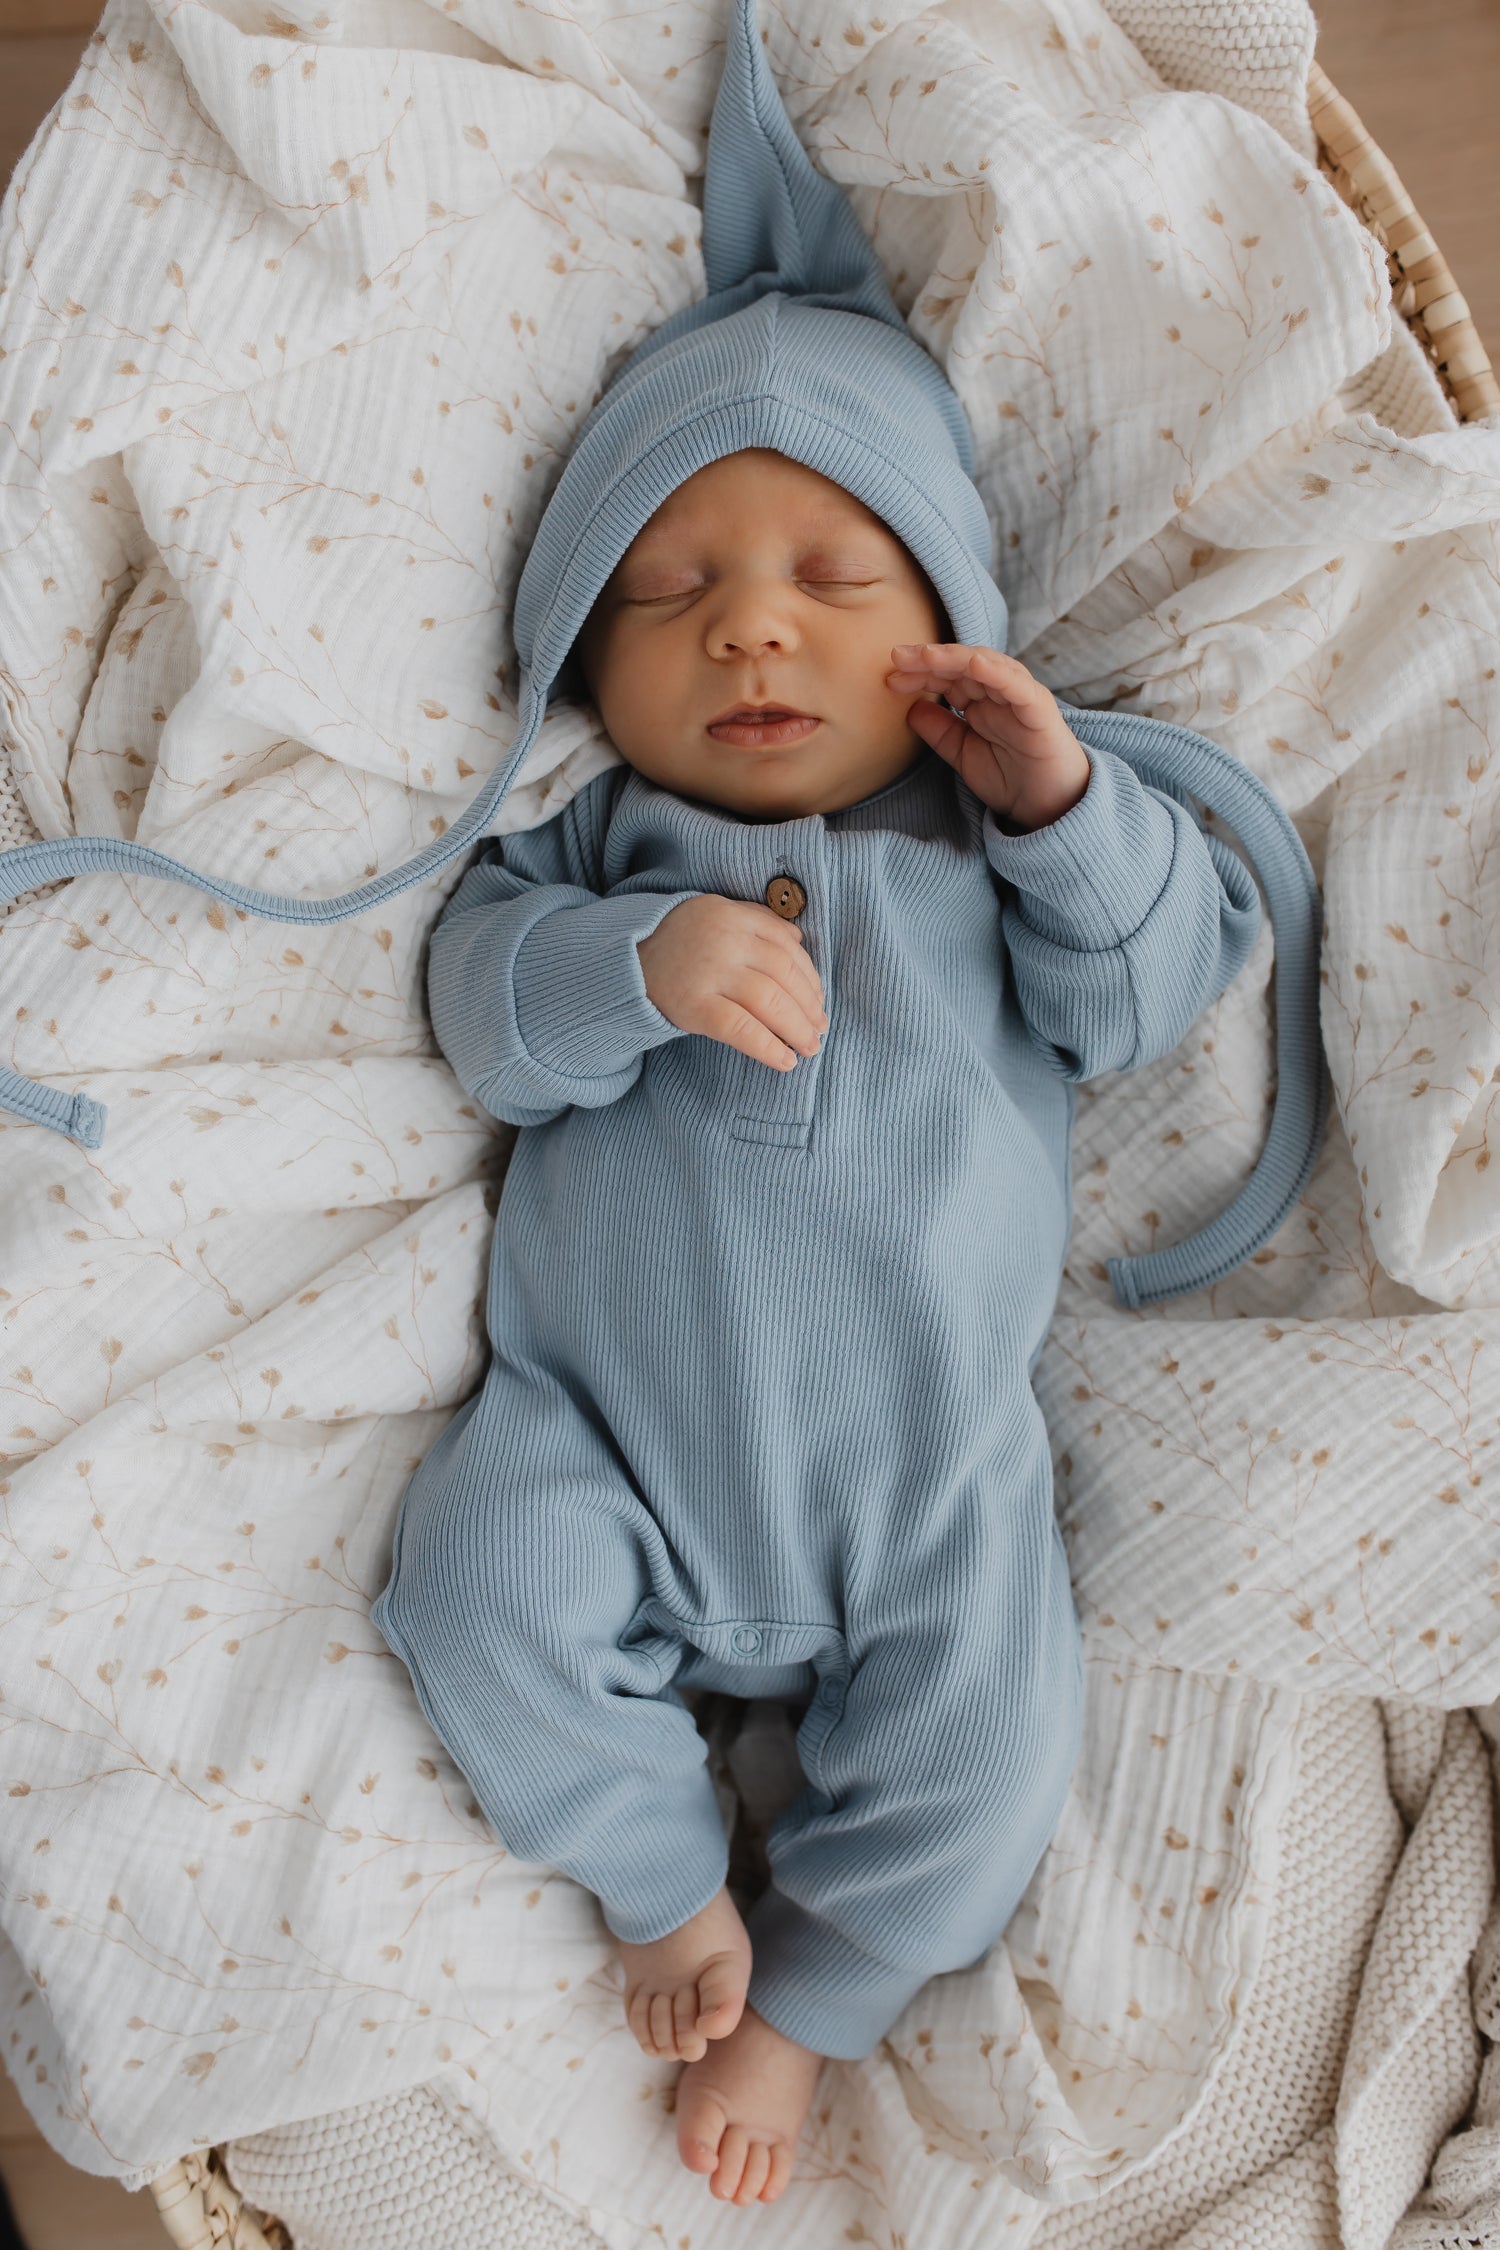 Een vredige pasgeboren baby slaapt heerlijk, gekleed in een Yumi Baby Boxpakje Blue Sky van hoogwaardig katoen met bijpassend mutsje, genesteld in een zacht crèmekleurig dekentje.